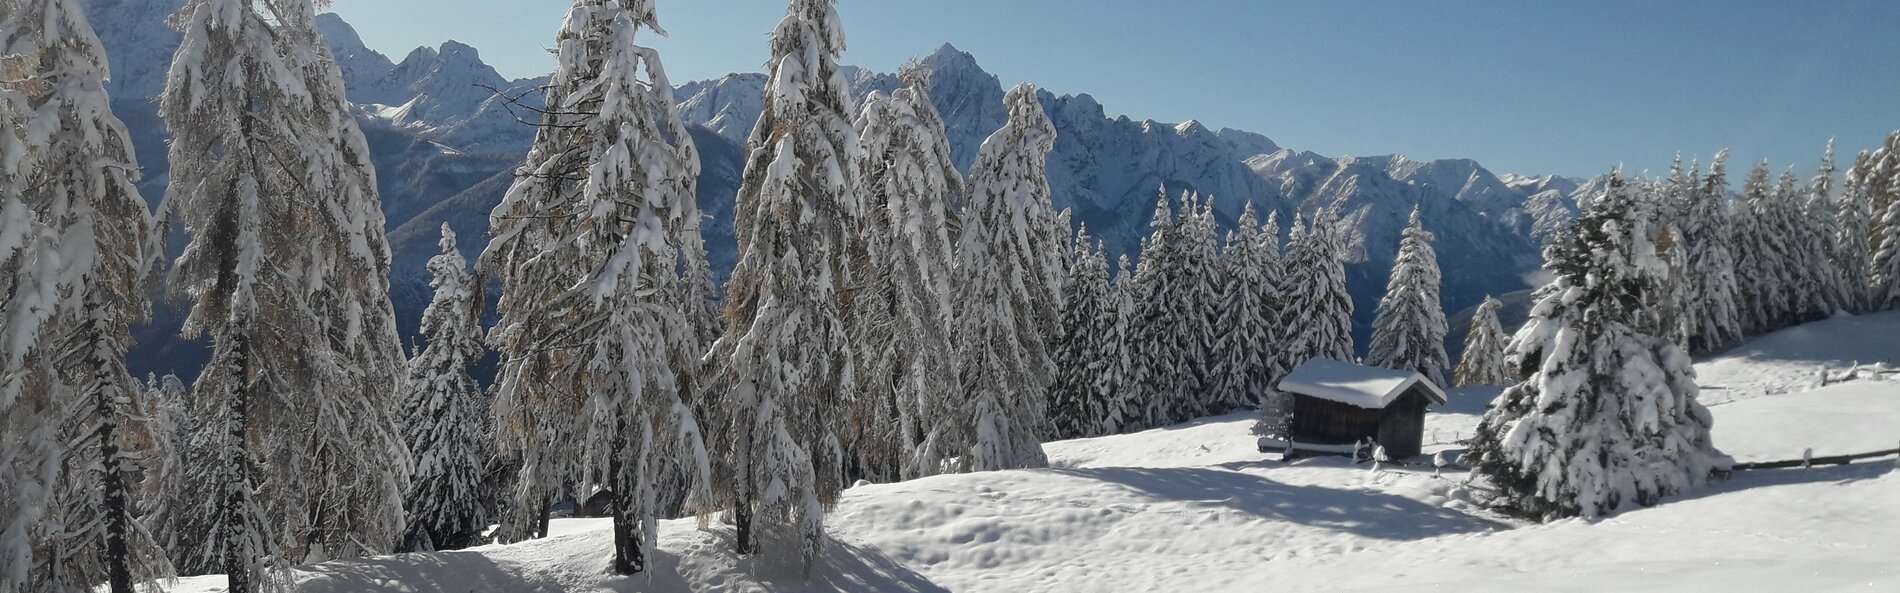 Malerische Winterlandschaft mit Tiefschnee, ein Stadel im Vordergrund © Andreas Angermann